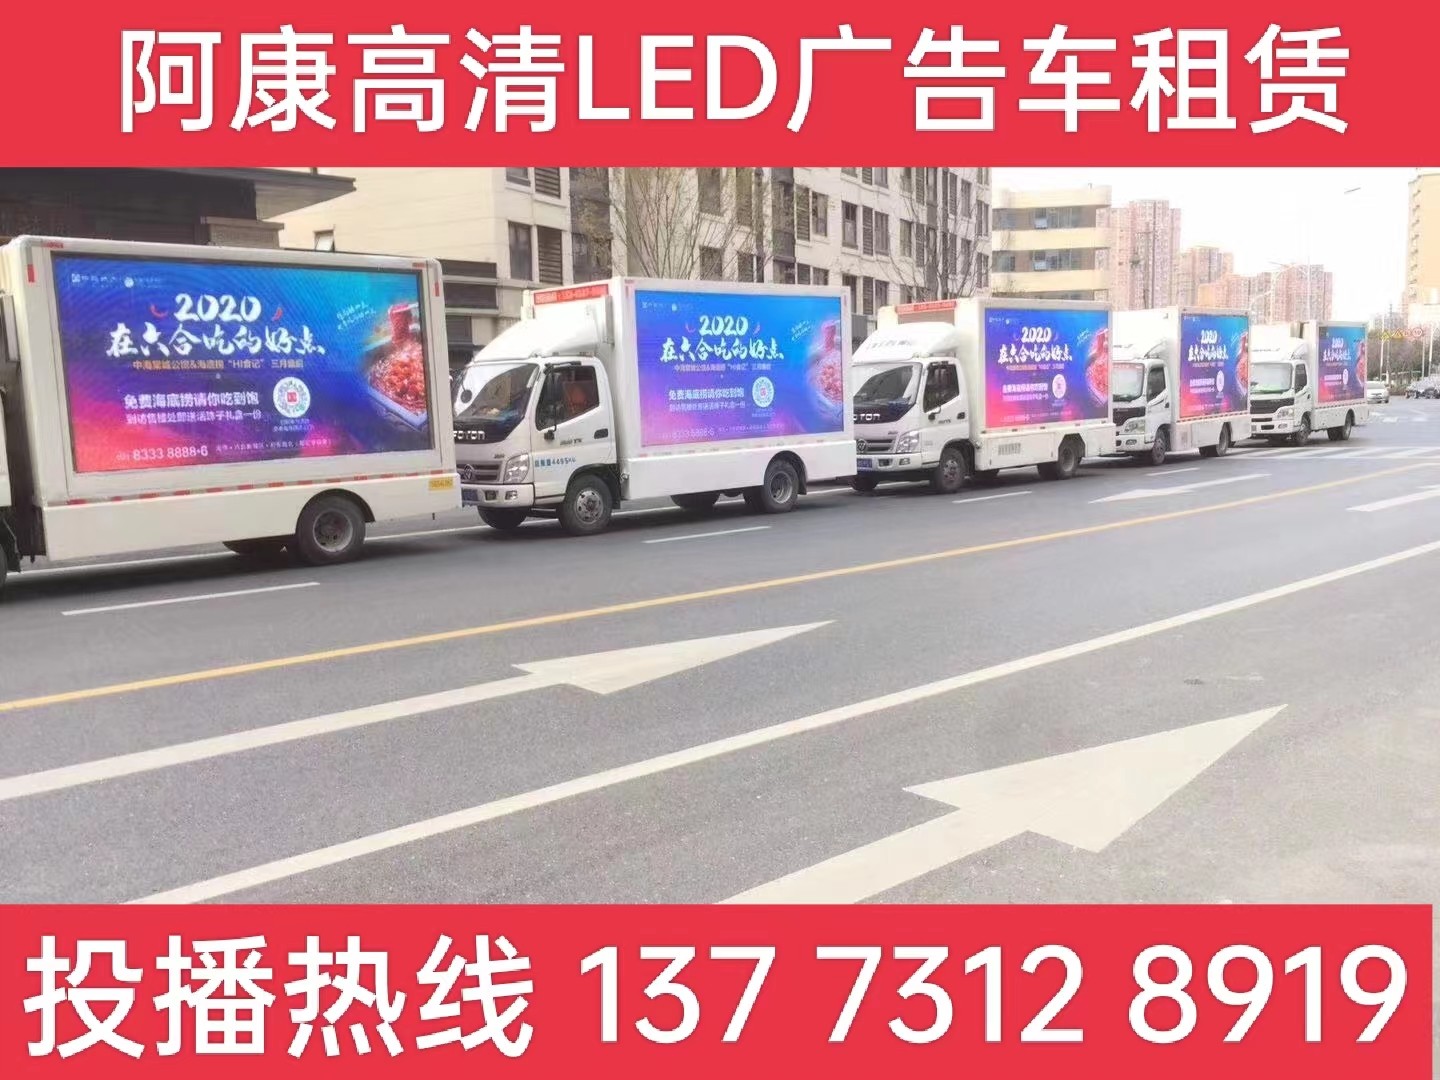 泗阳县宣传车出租-海底捞LED广告